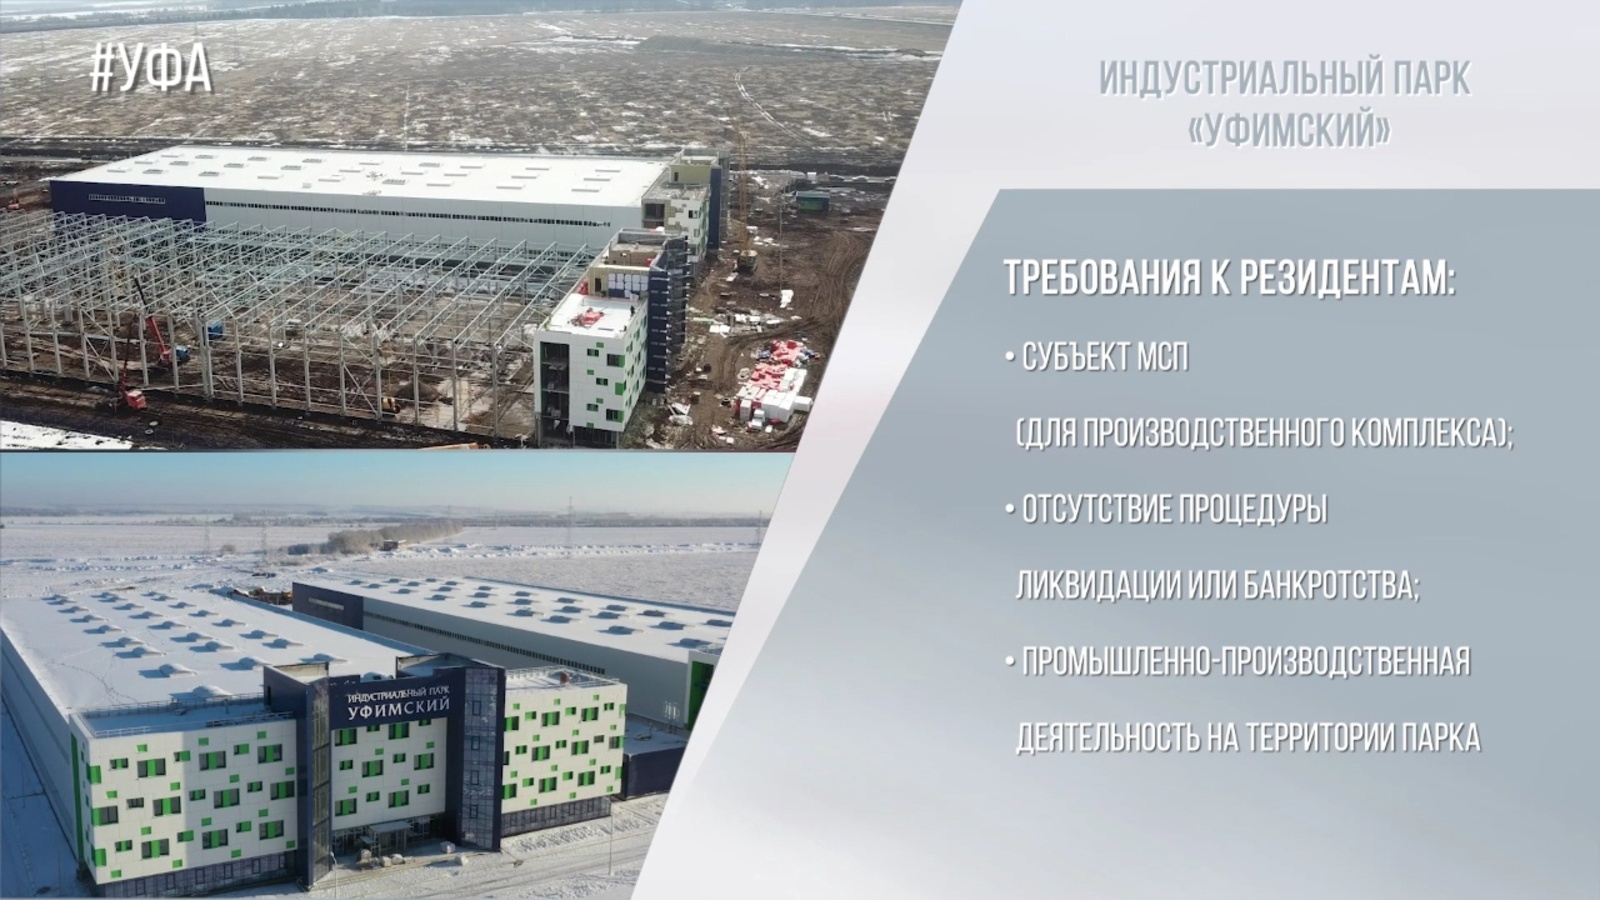 В Башкортостане построили большой производственный комплекс на территории индустриального Парка «Уфимский».